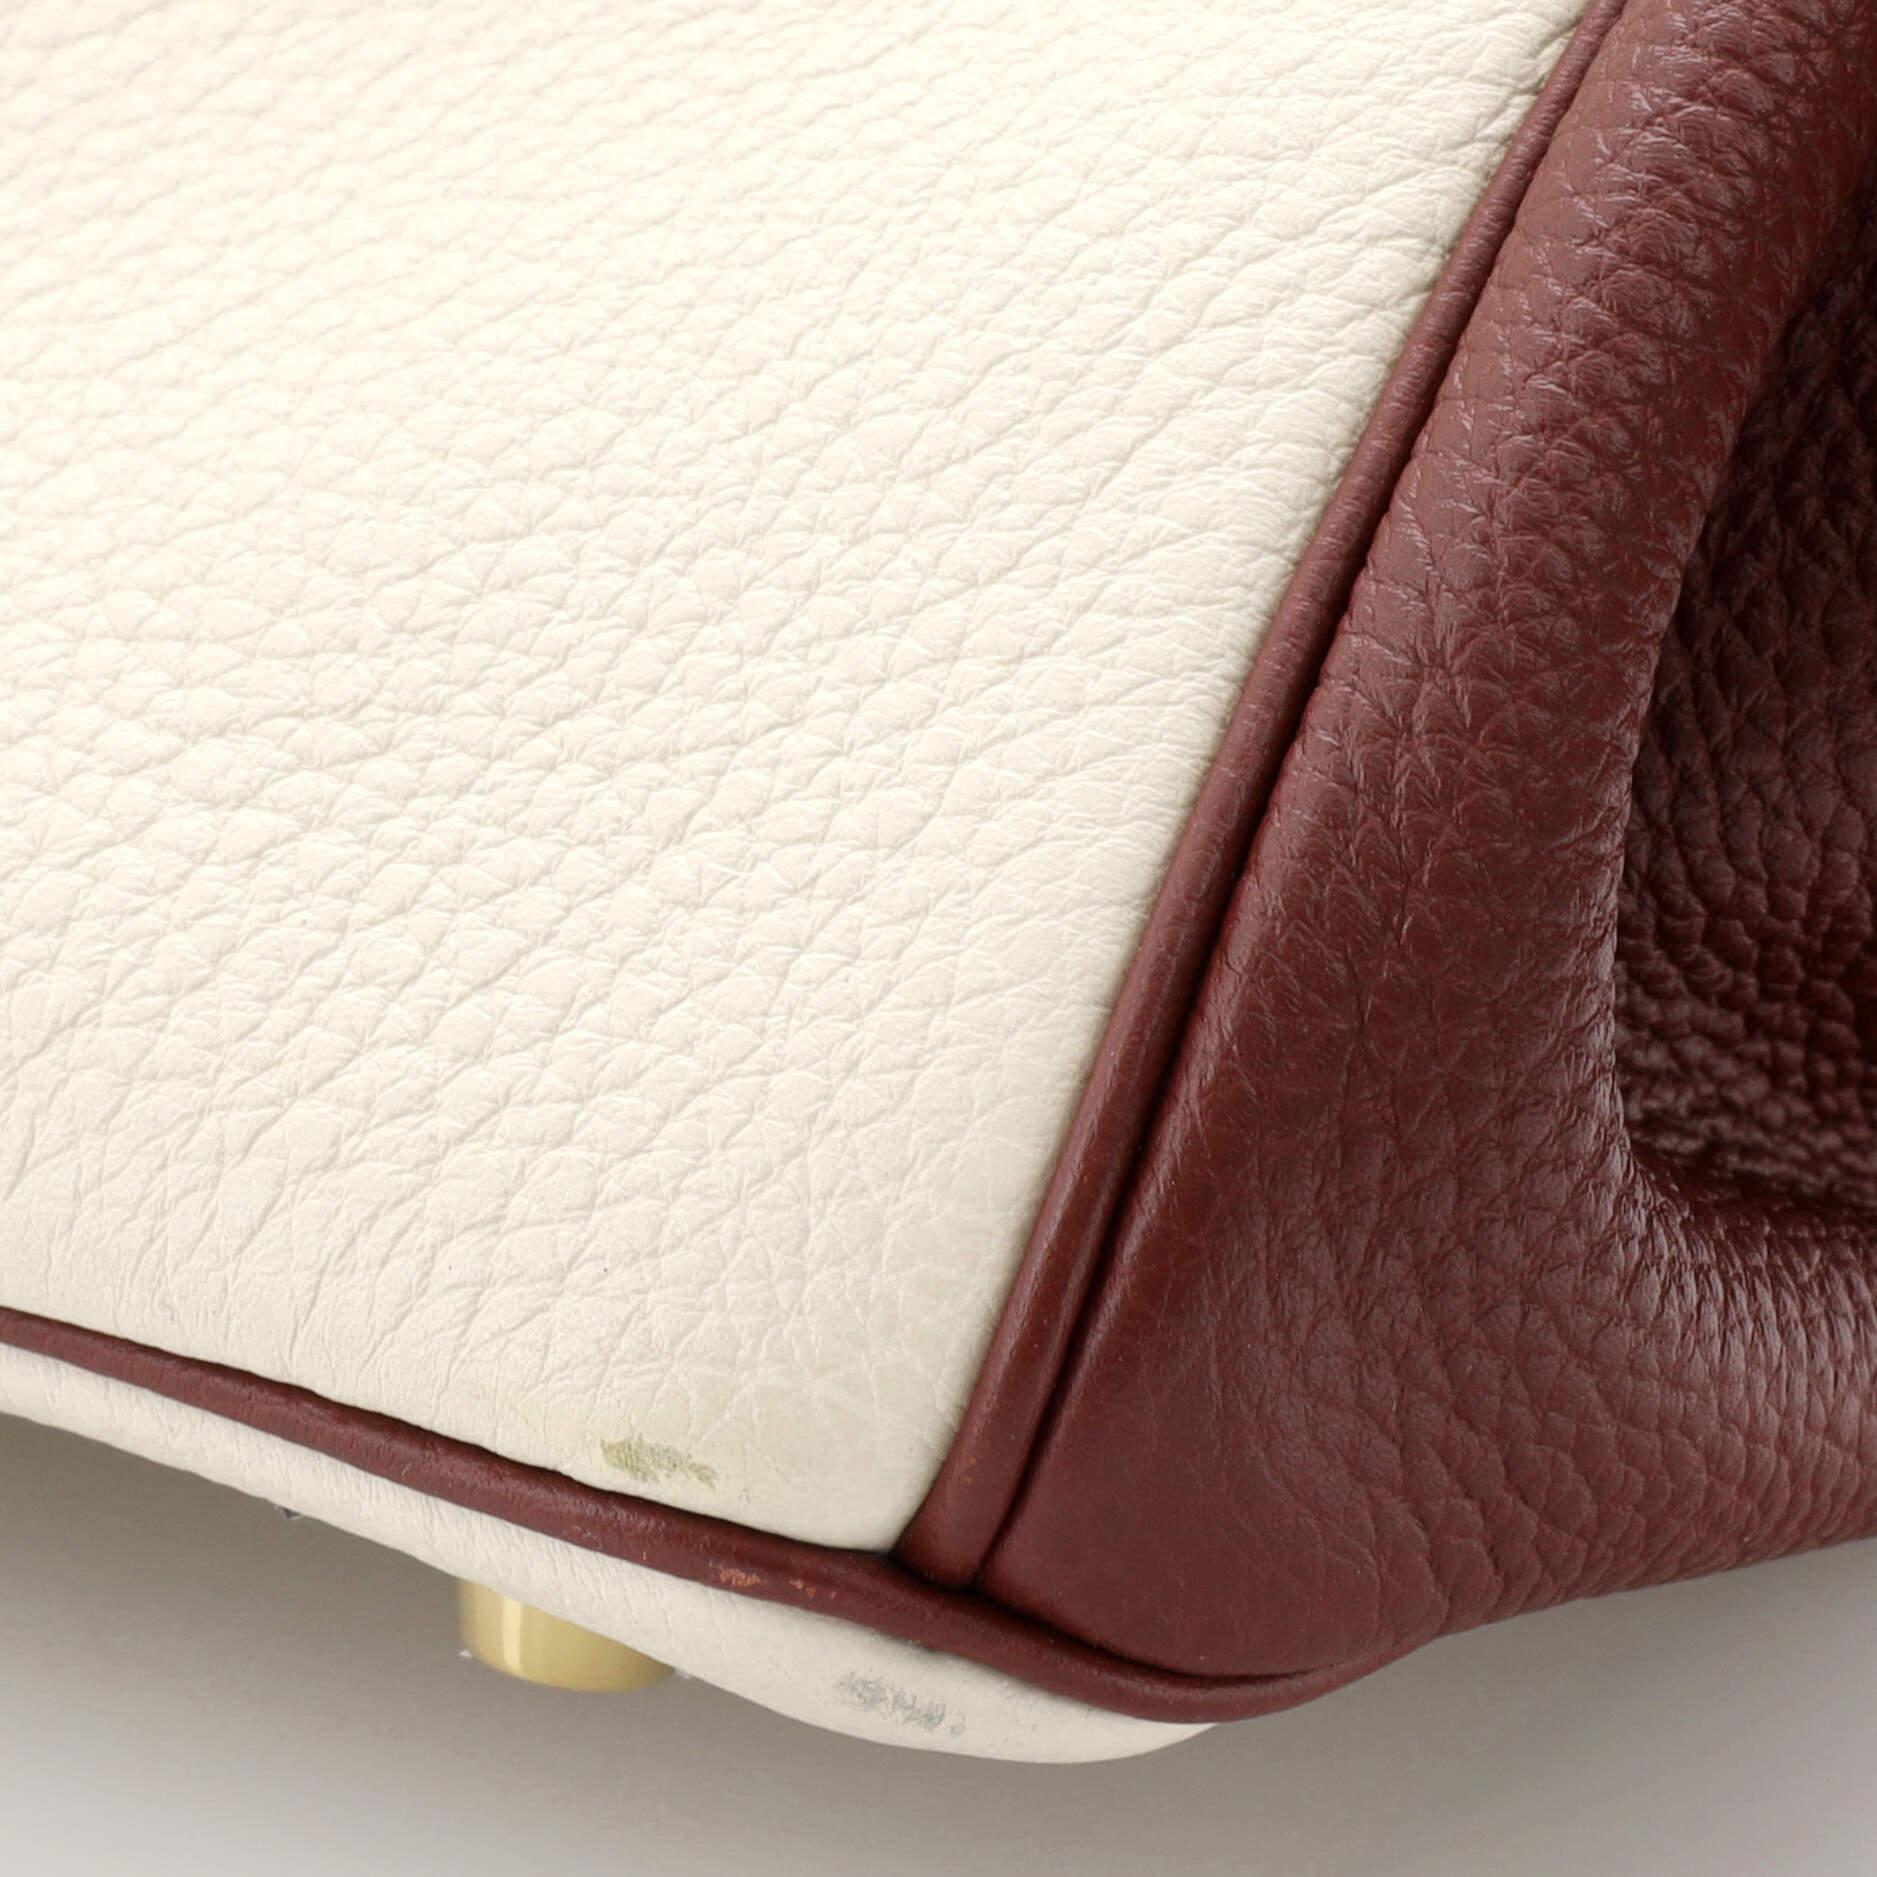 Hermes Birkin Handbag Bicolor Clemence with Brushed Gold Hardware 25 For Sale 4